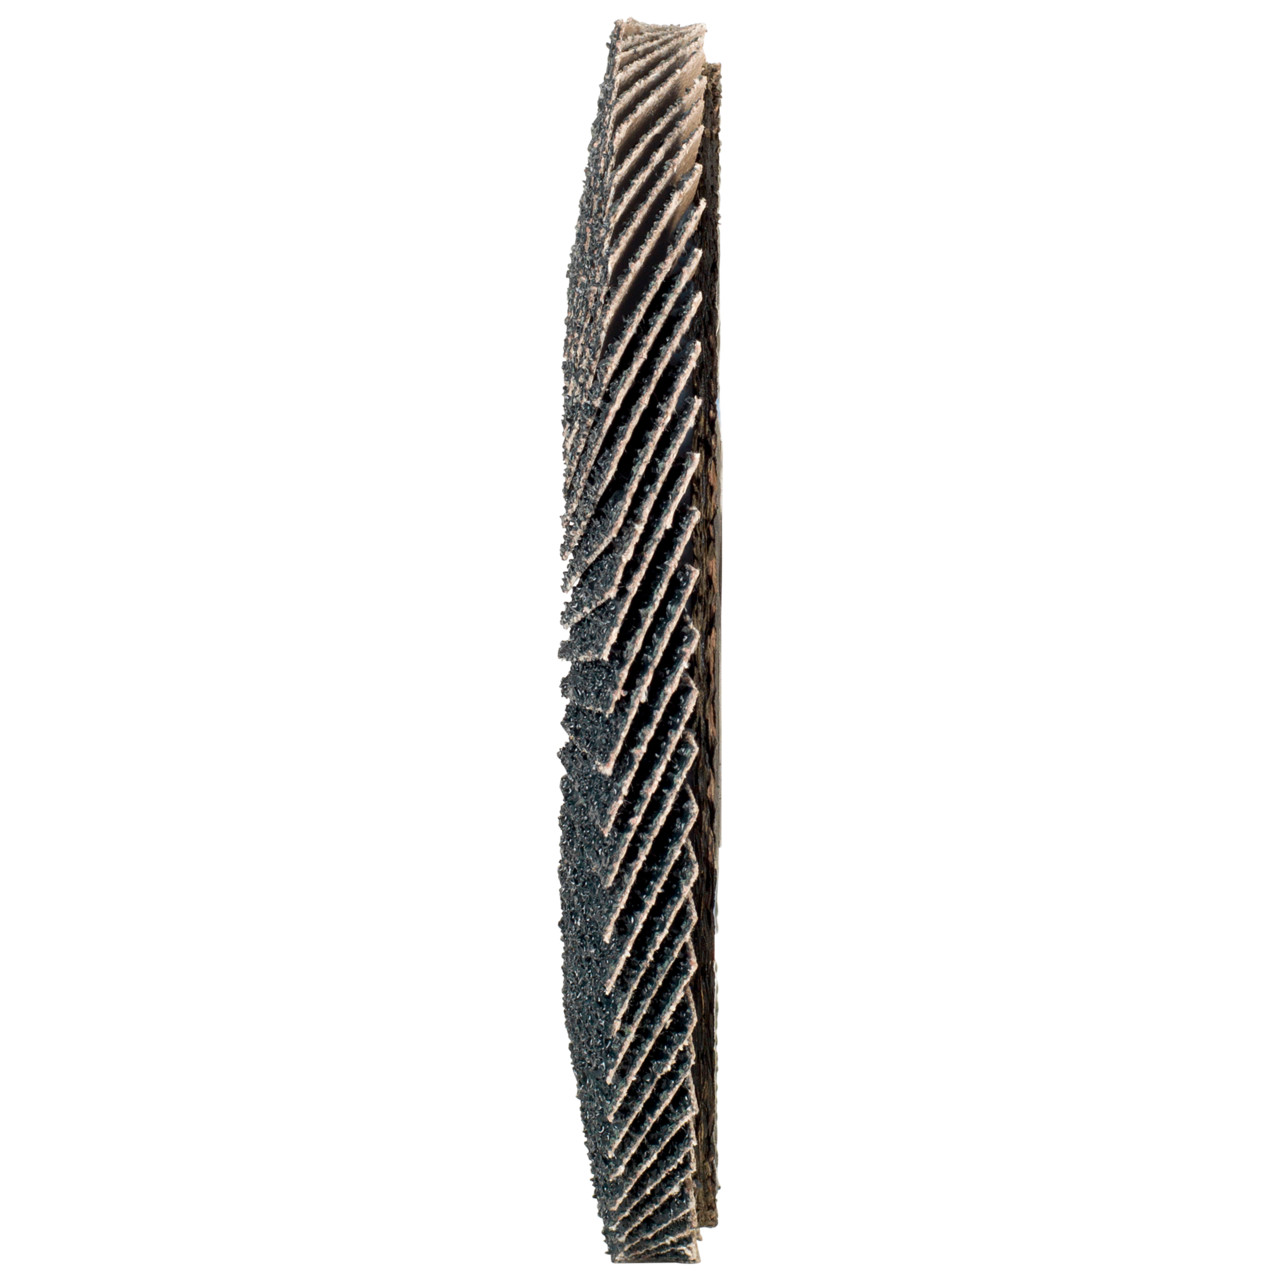 Tyrolit Arandela dentada DxH 178x22,2 2en1 para acero y acero inoxidable, P120, forma: 27A - versión desplazada (versión con cuerpo de soporte de fibra de vidrio), Art. 643807